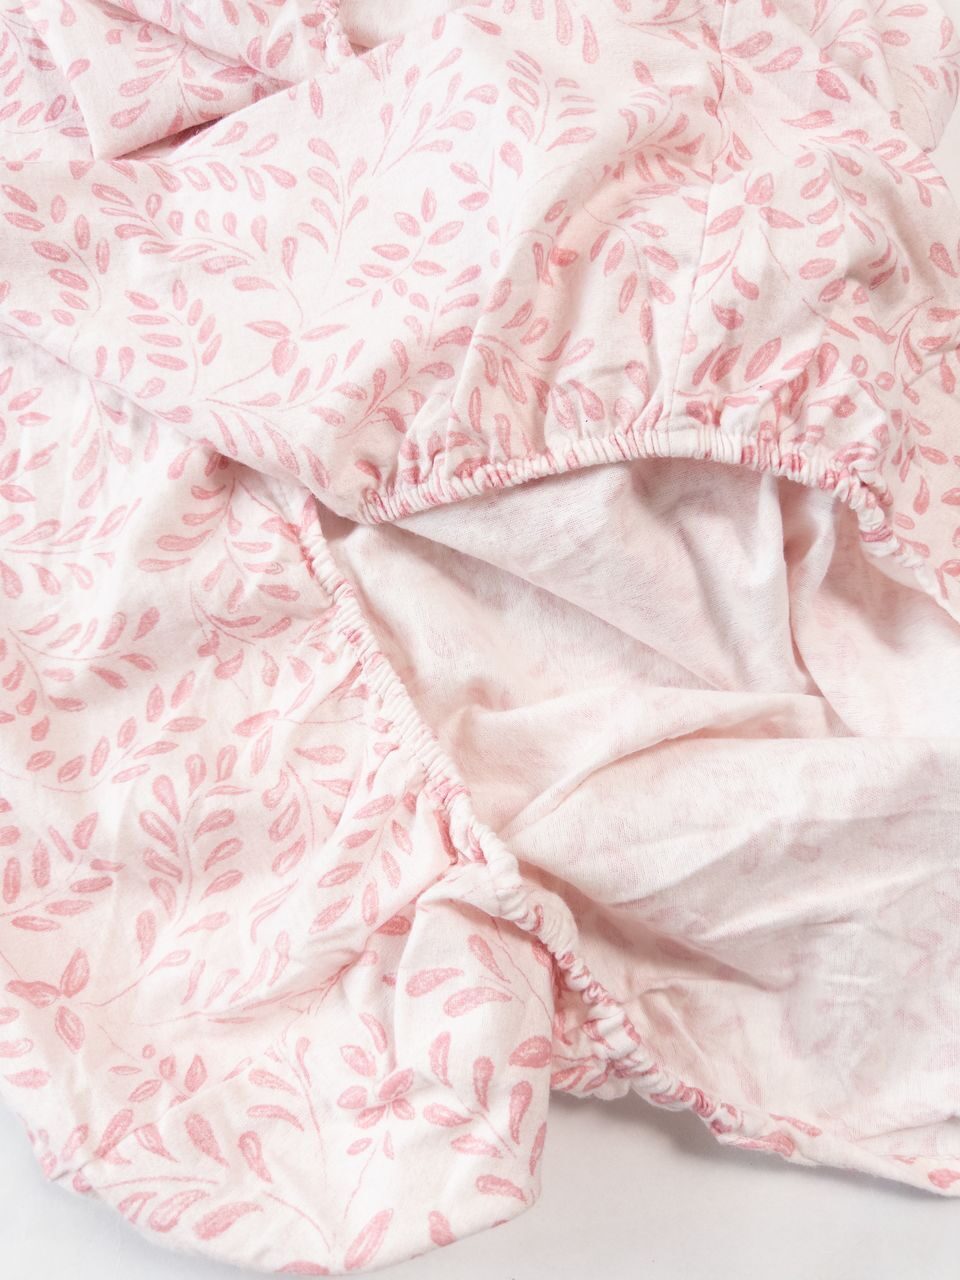 Комплект постельного белья фланелевый простынь на резинке размер 90х200х25 см + наволочка 1 шт размер 48х74 см цвет розовый принт листья Primark